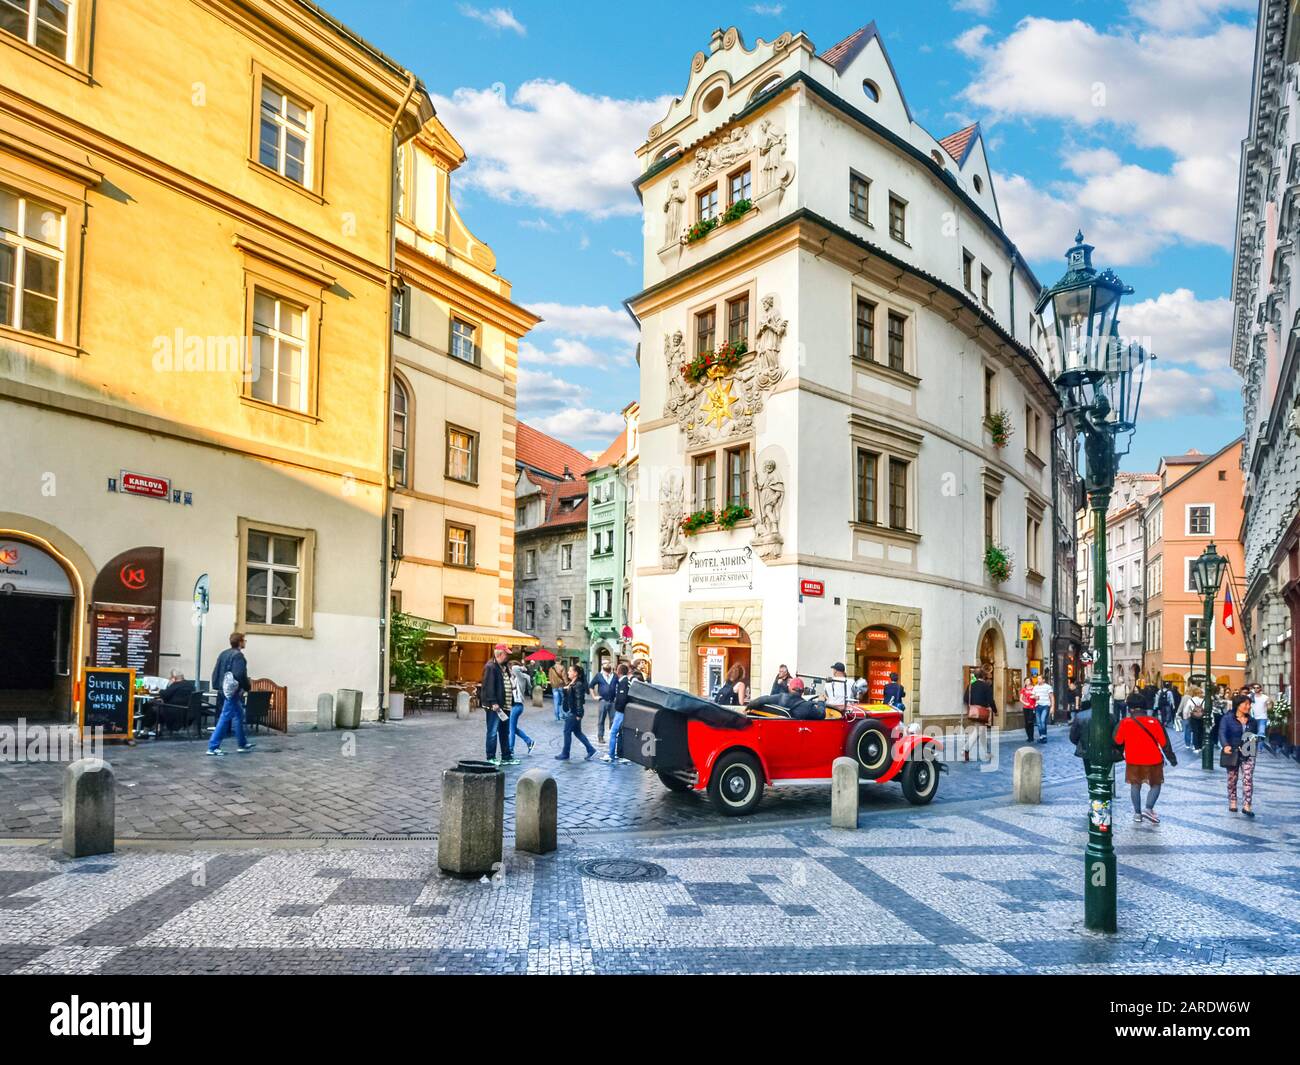 Una encantadora y pintoresca escena callejera y un coche de época en una colorida zona de tiendas, hoteles y cafés en la parte del casco antiguo de Praga, República Checa. Foto de stock